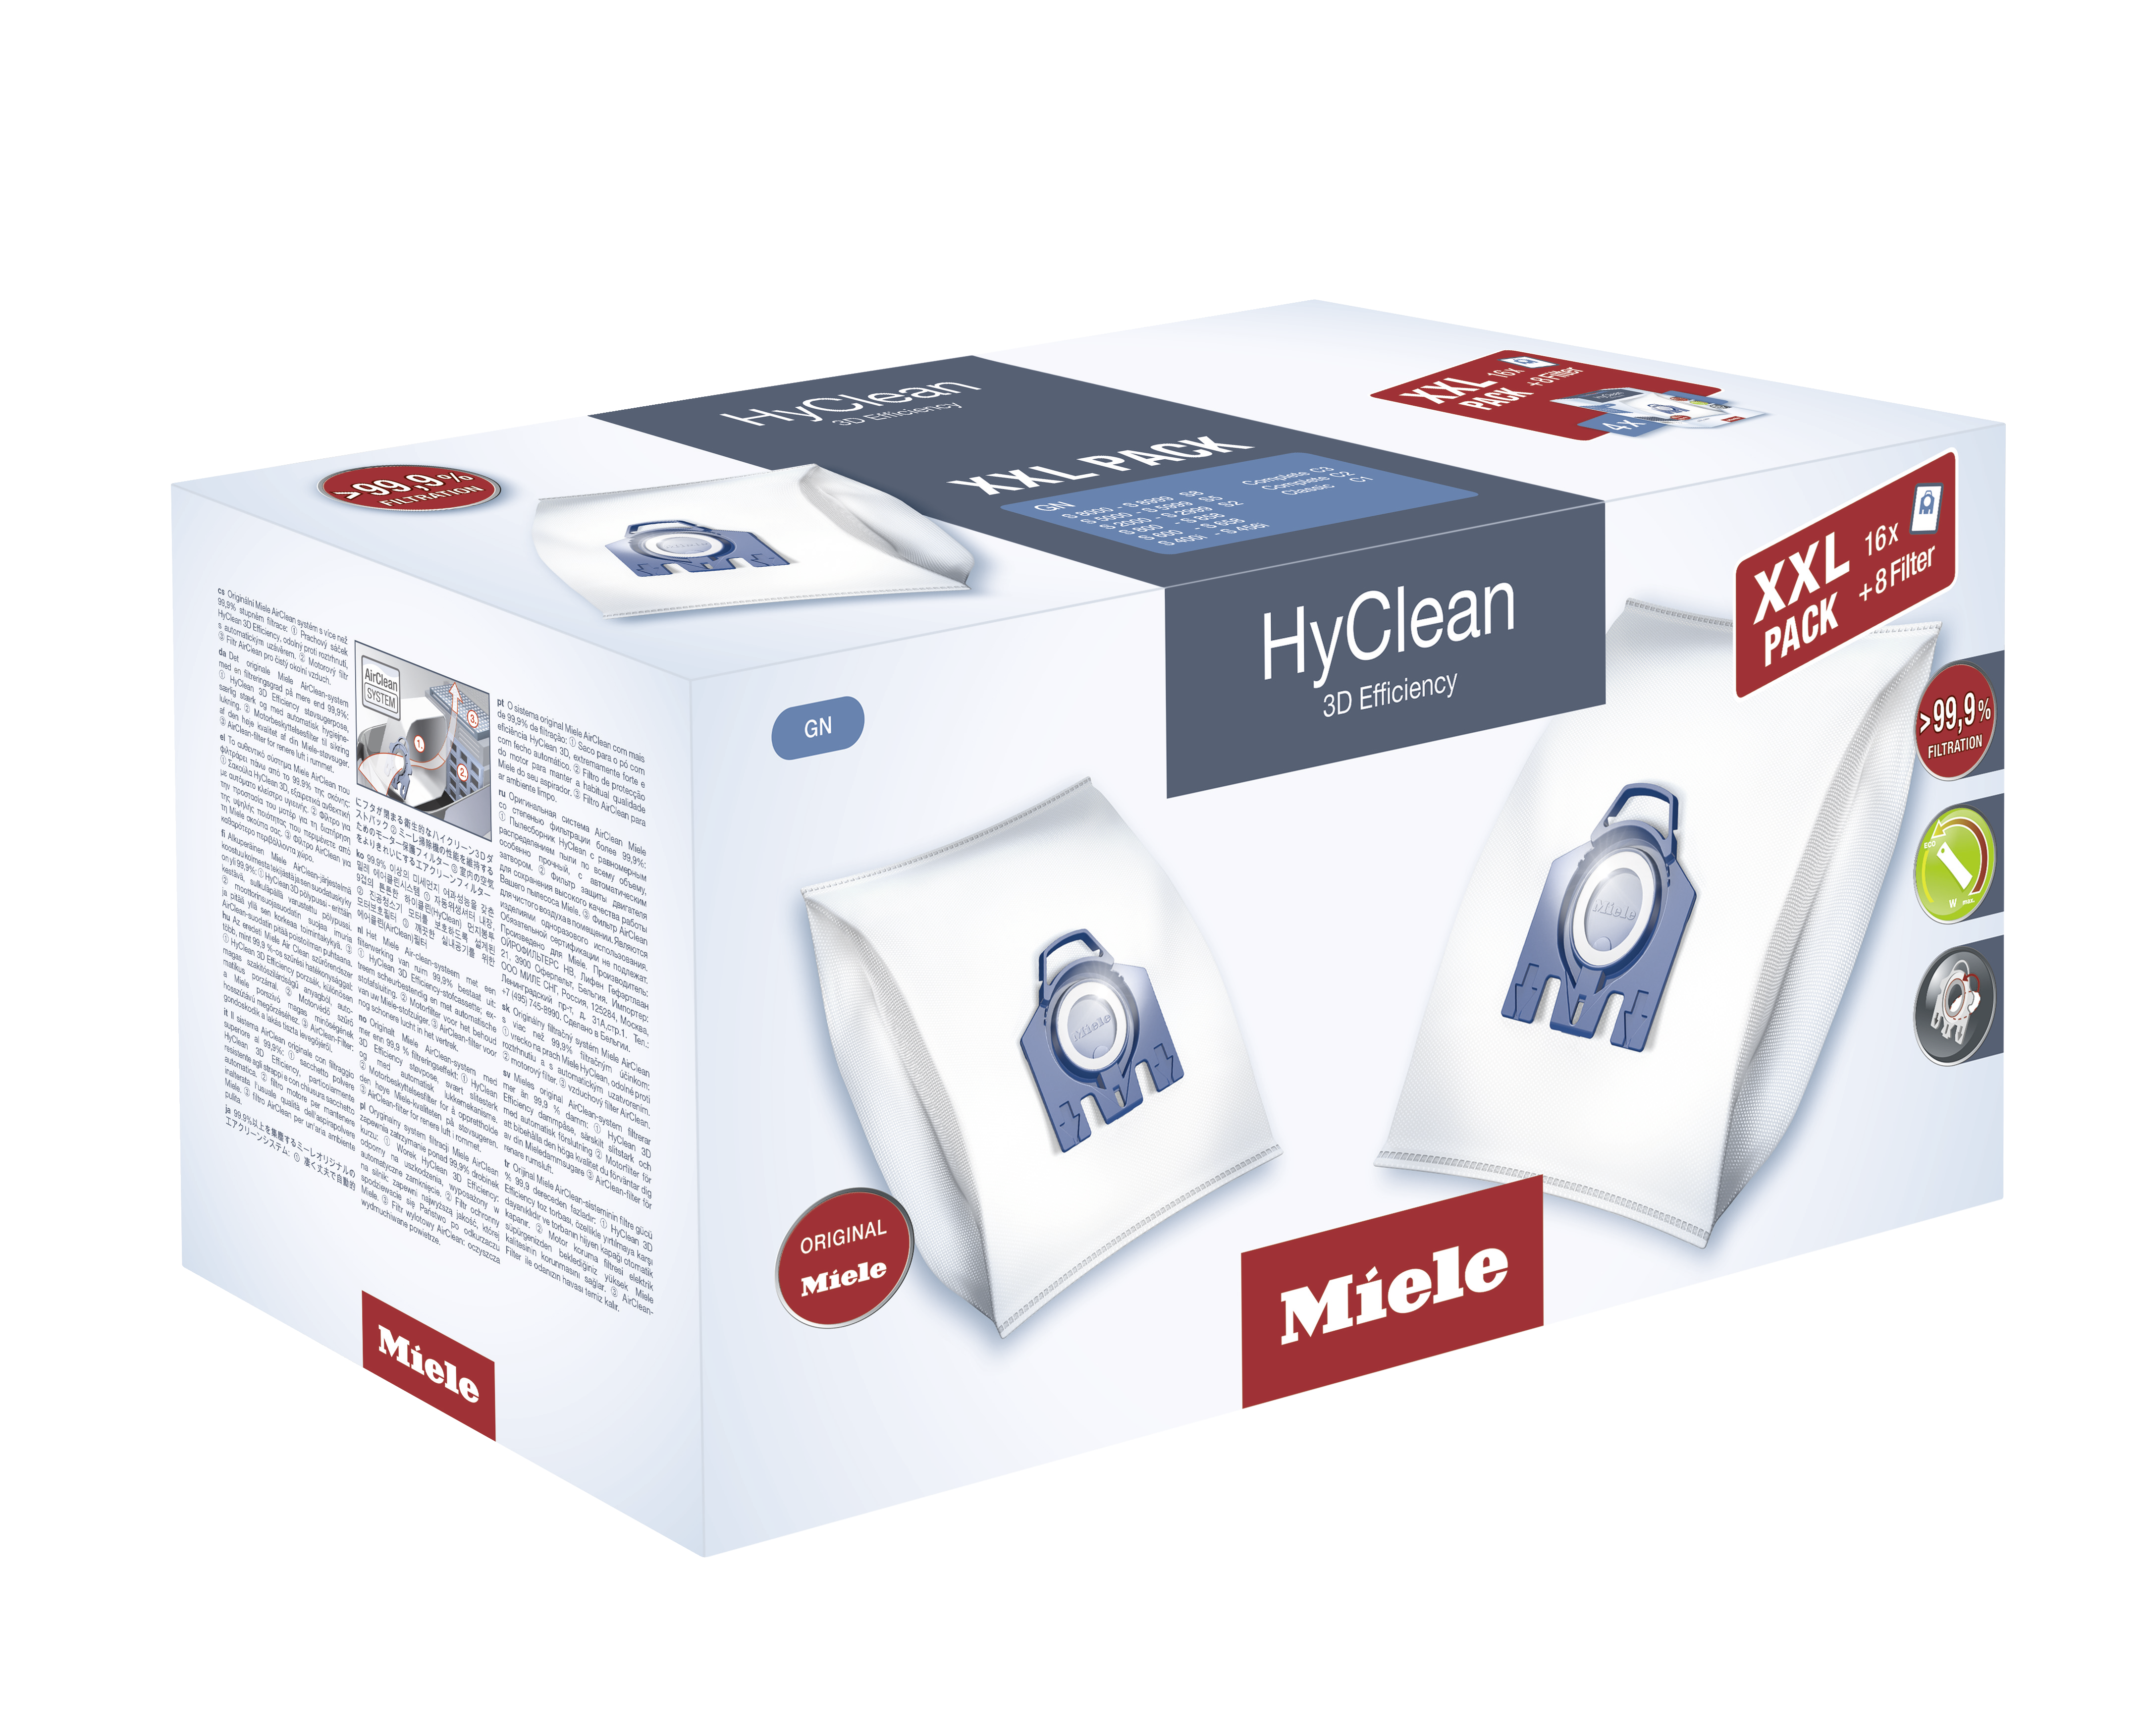 8 sacchetti più 4 filtri 1 Miele Hyclean GN 2 confezioni 